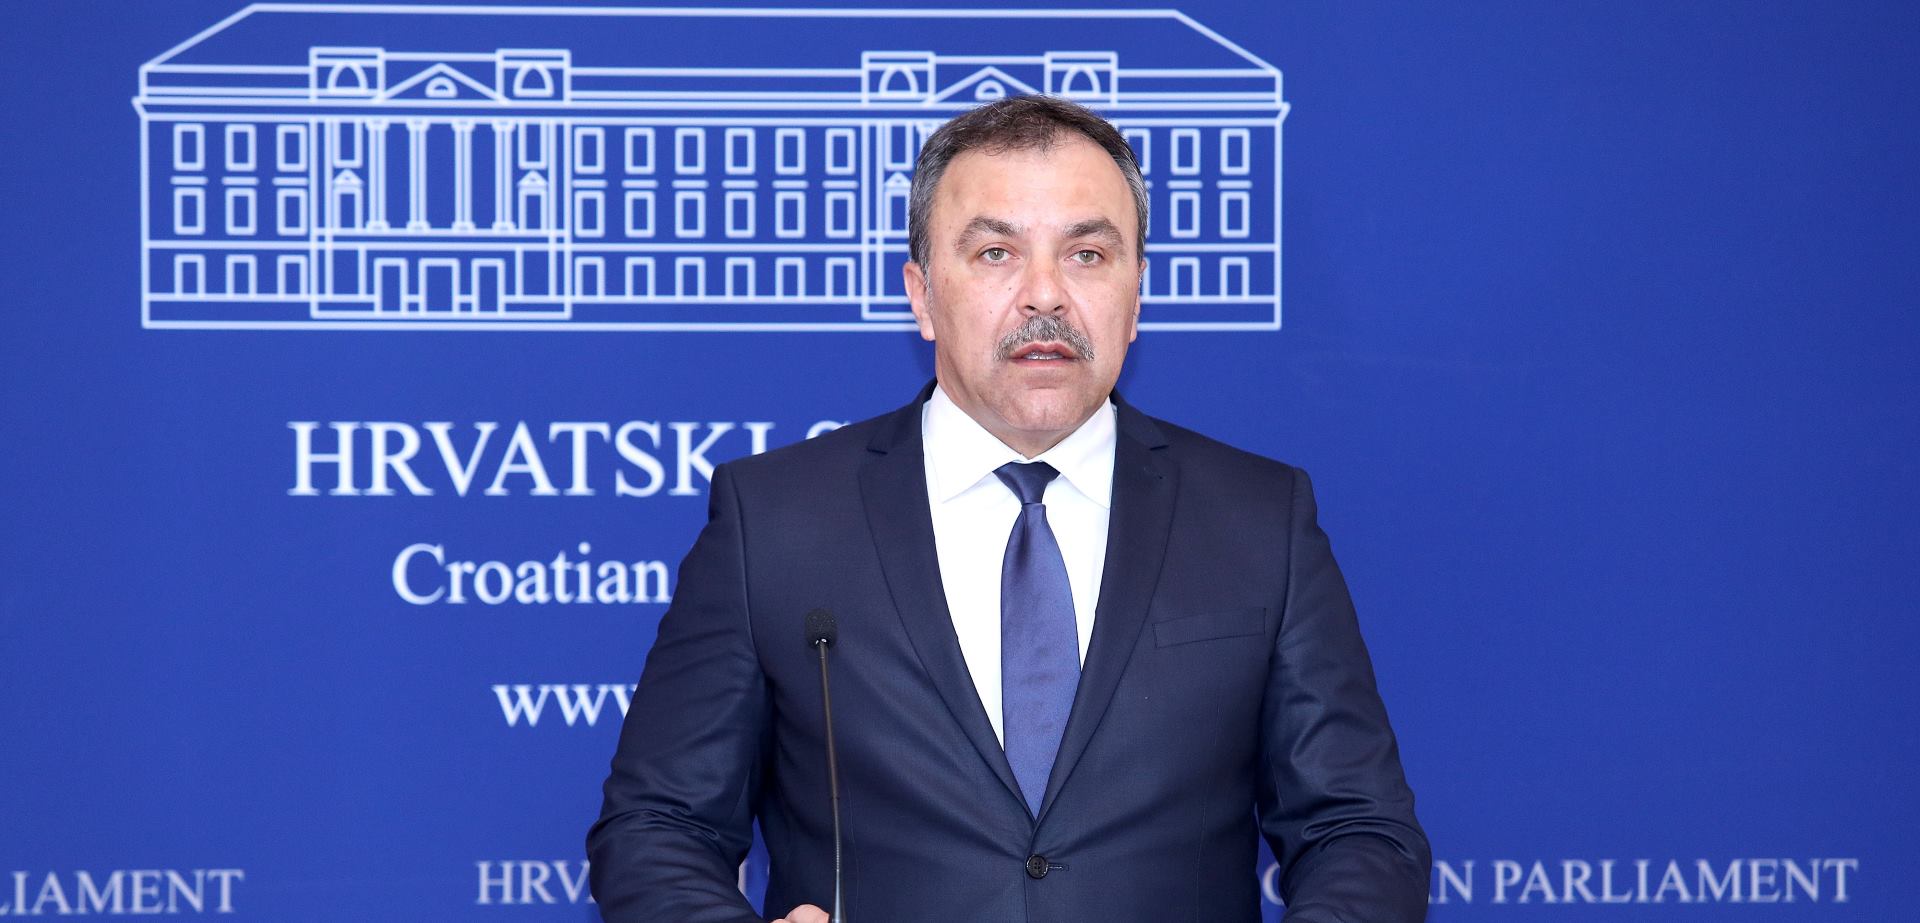 Zastupnik Vlaho Orepić ponovo pozvao na evidenciju fiktivnih glasača i prebivališta